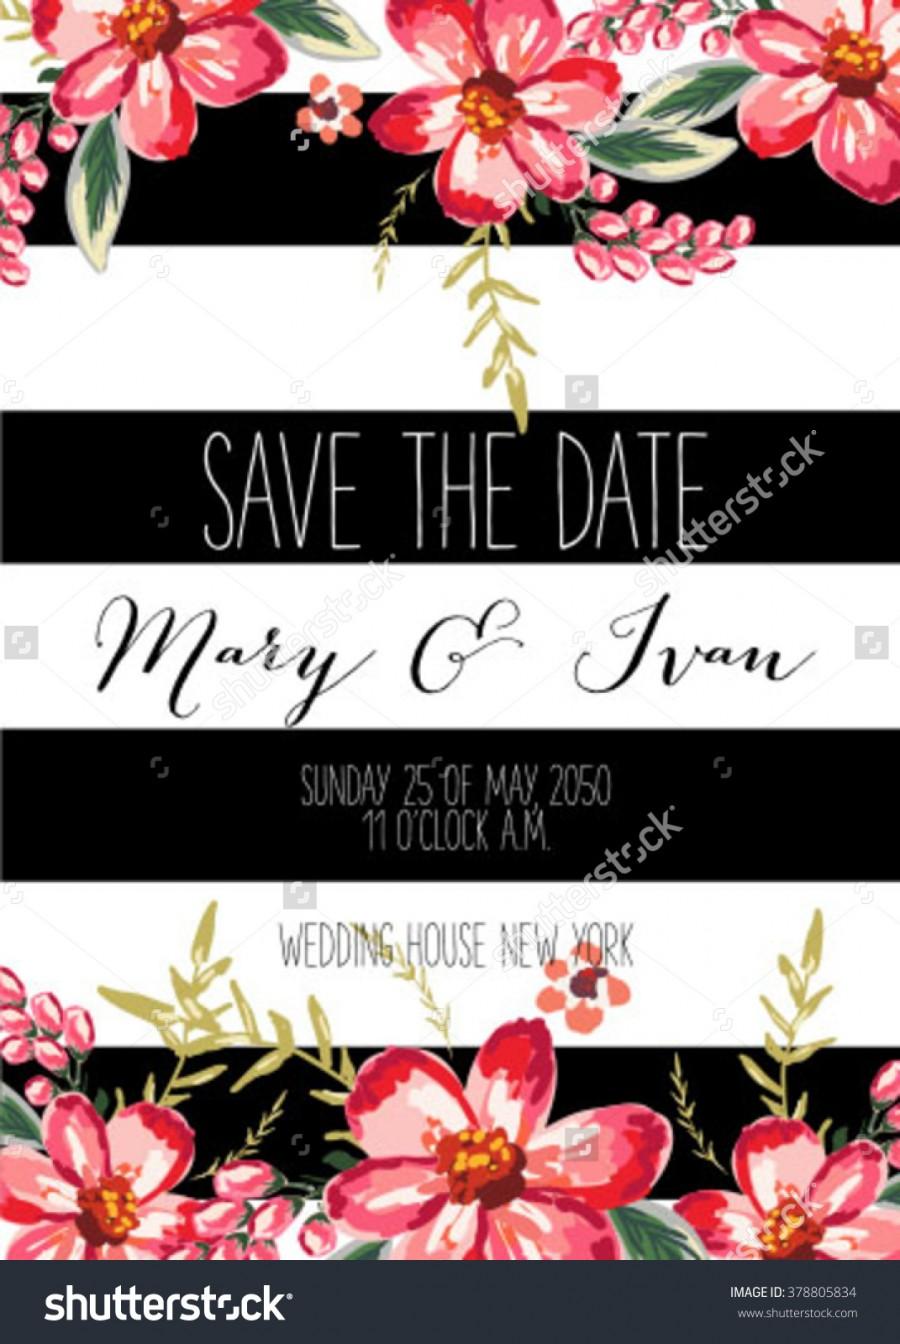 Hochzeit - Save the date design. Wedding invitation with flowers.